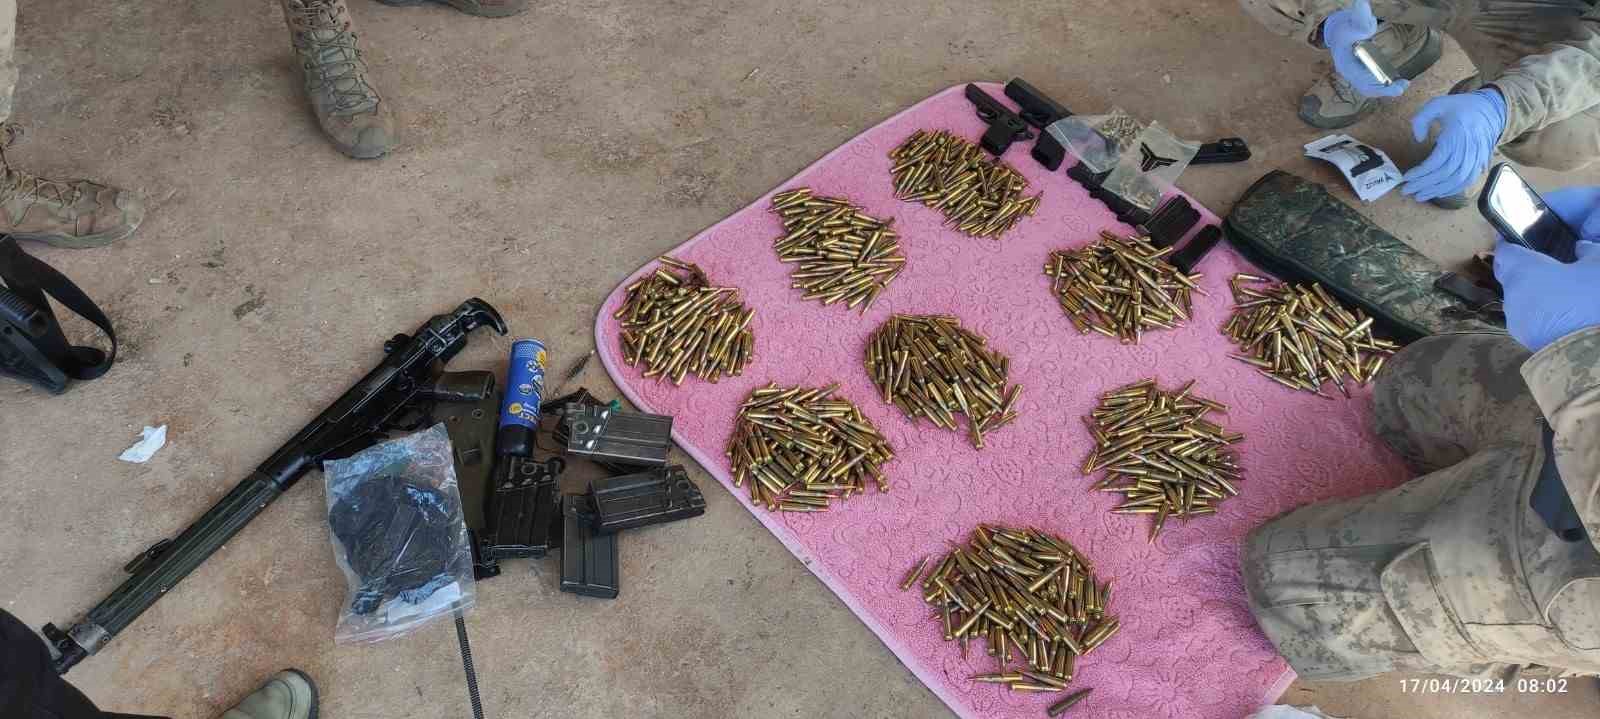 Şanlıurfa’da silah kaçakçılarına operasyon: 3 gözaltı
